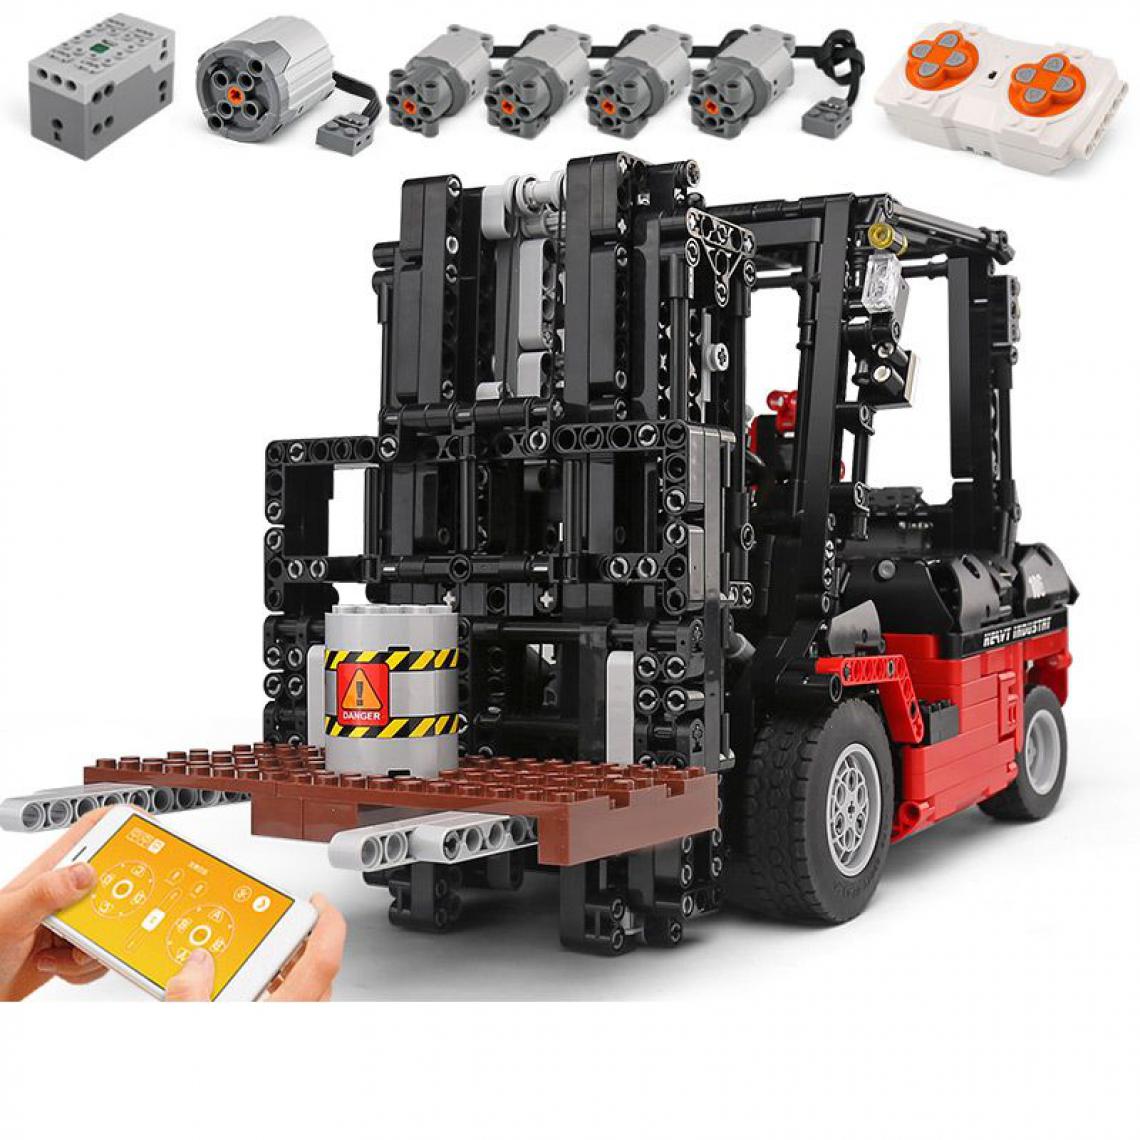 Generic - Jouet de construction Mould king camion télécommandée avec moteur 42  * 15  *  21  cm - Rouge   - Briques et blocs